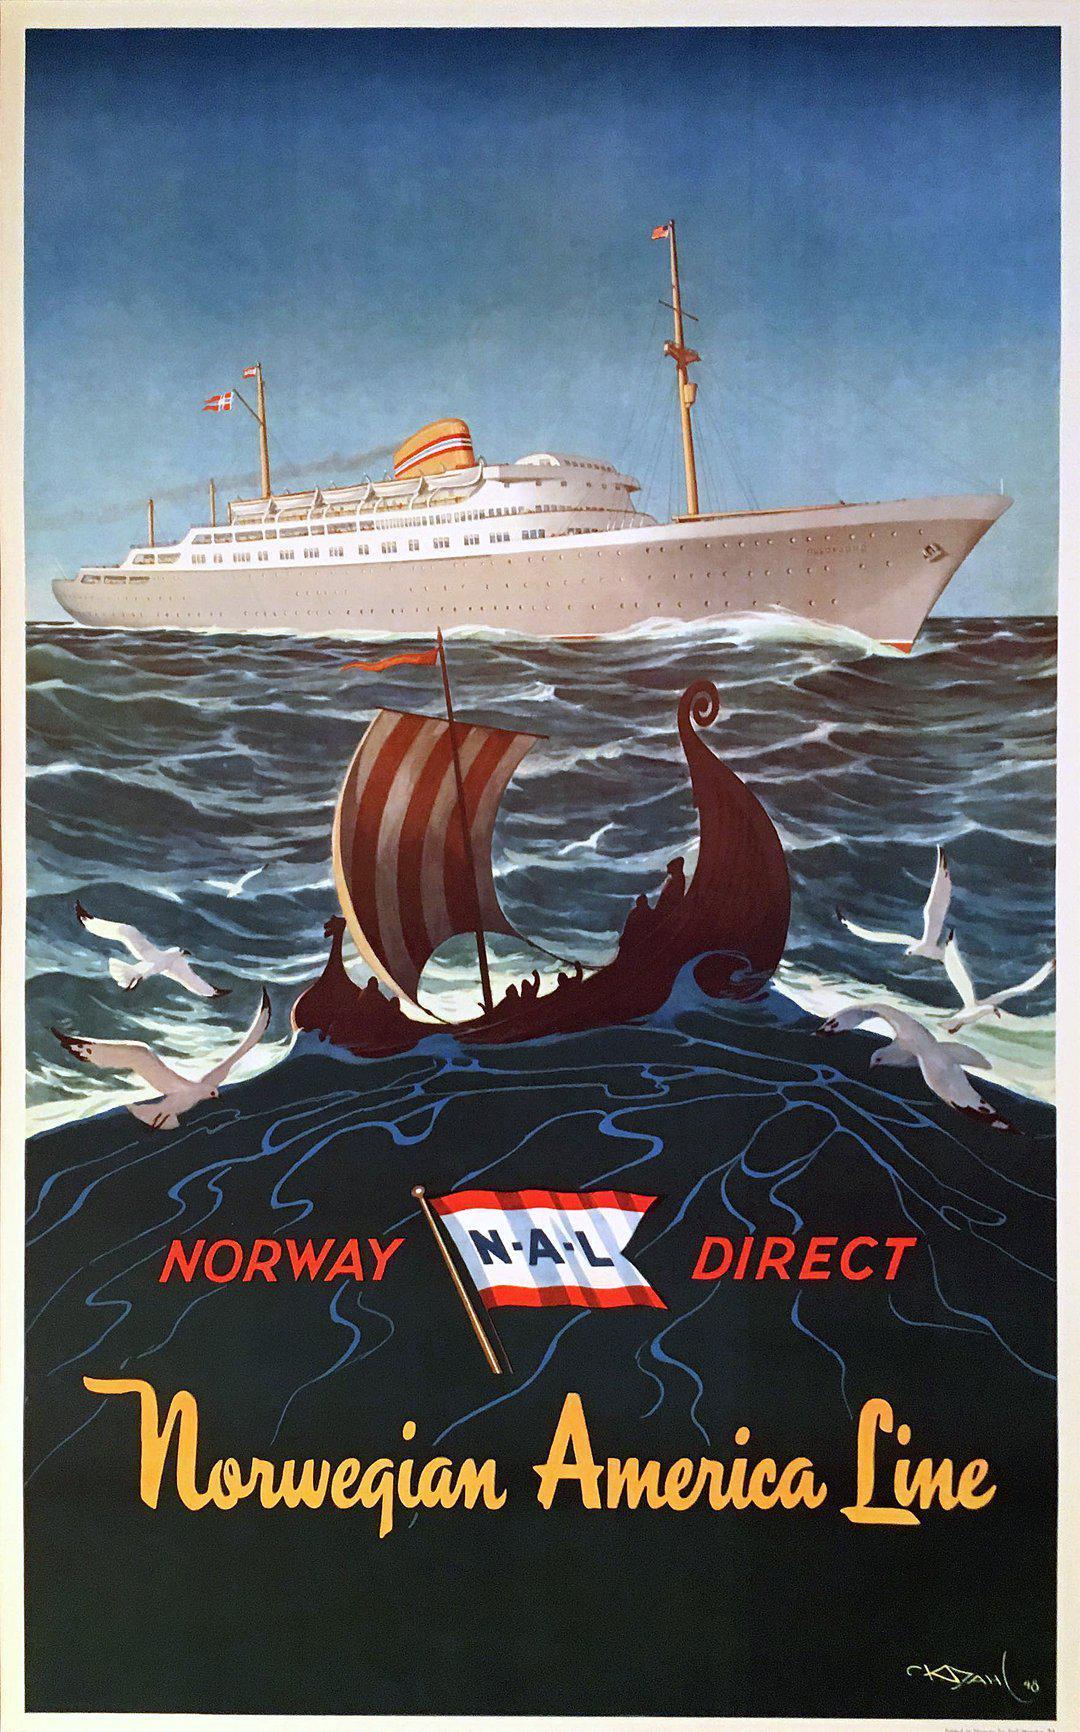 Original Vintage Norwegian American Line Norway Direct by Karl Dahl 1948